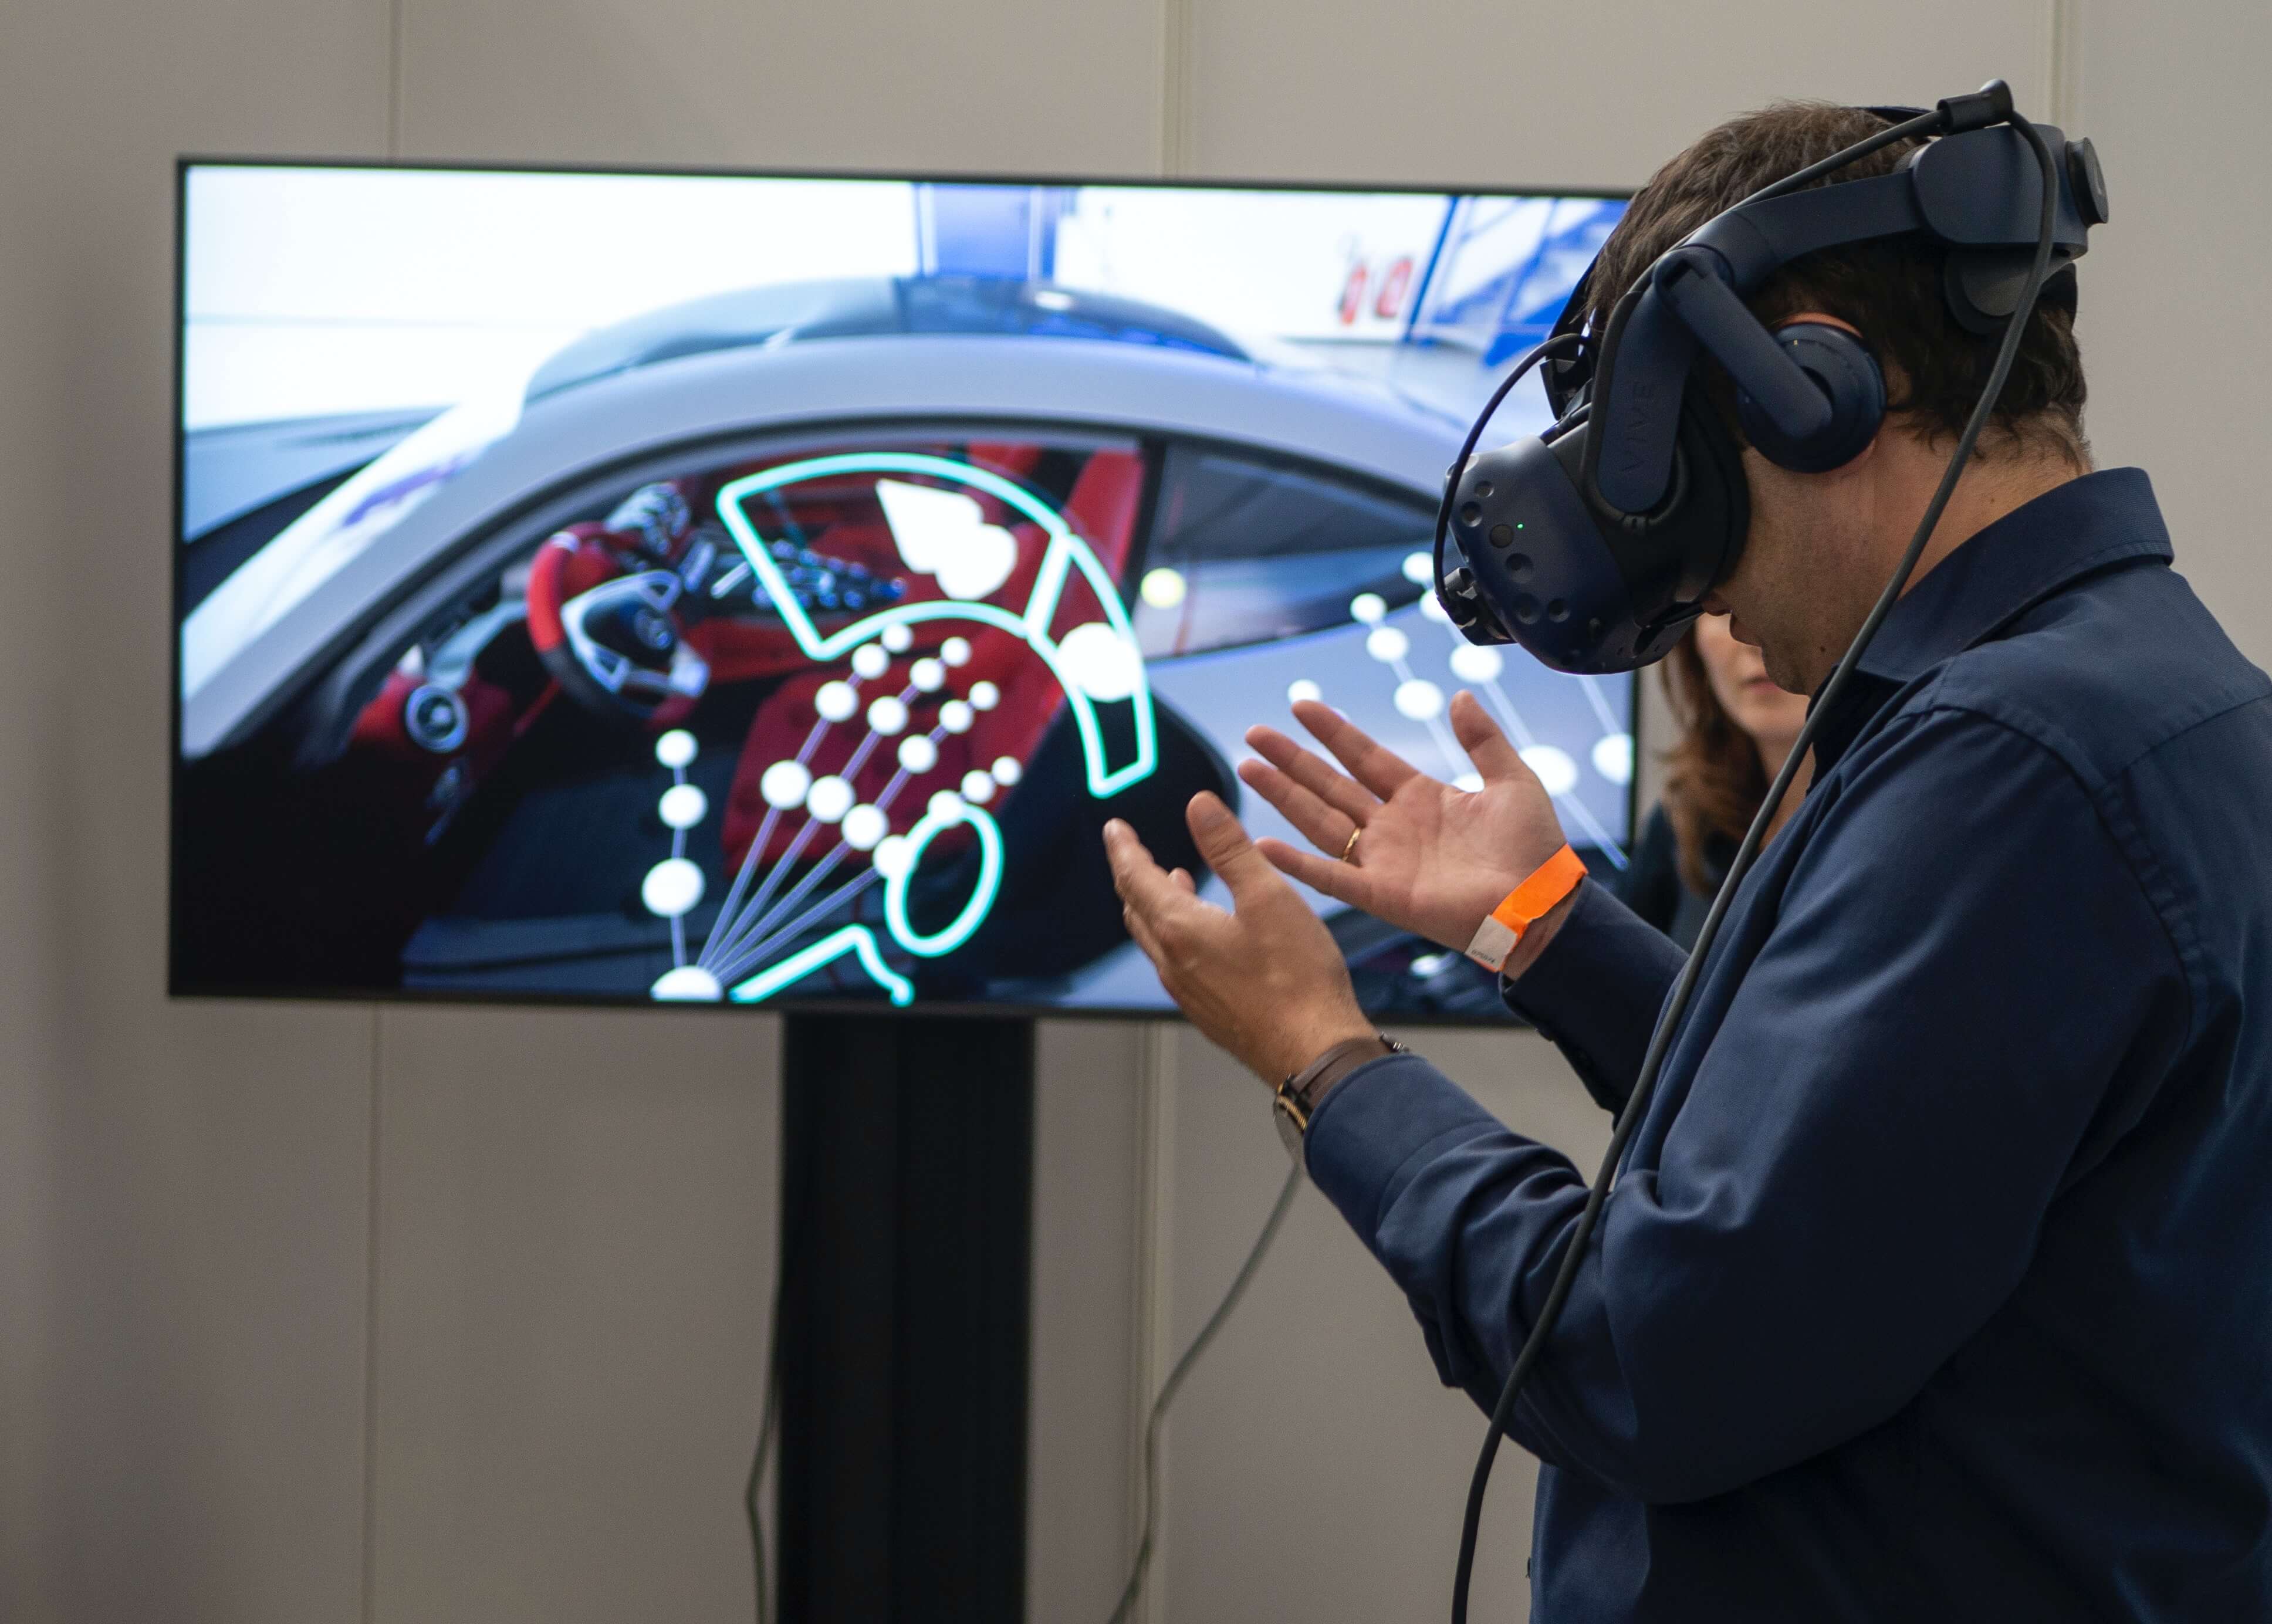 图片展示一位佩戴虚拟现实头盔的男性，似乎在体验或操作虚拟现实中的汽车模拟系统。